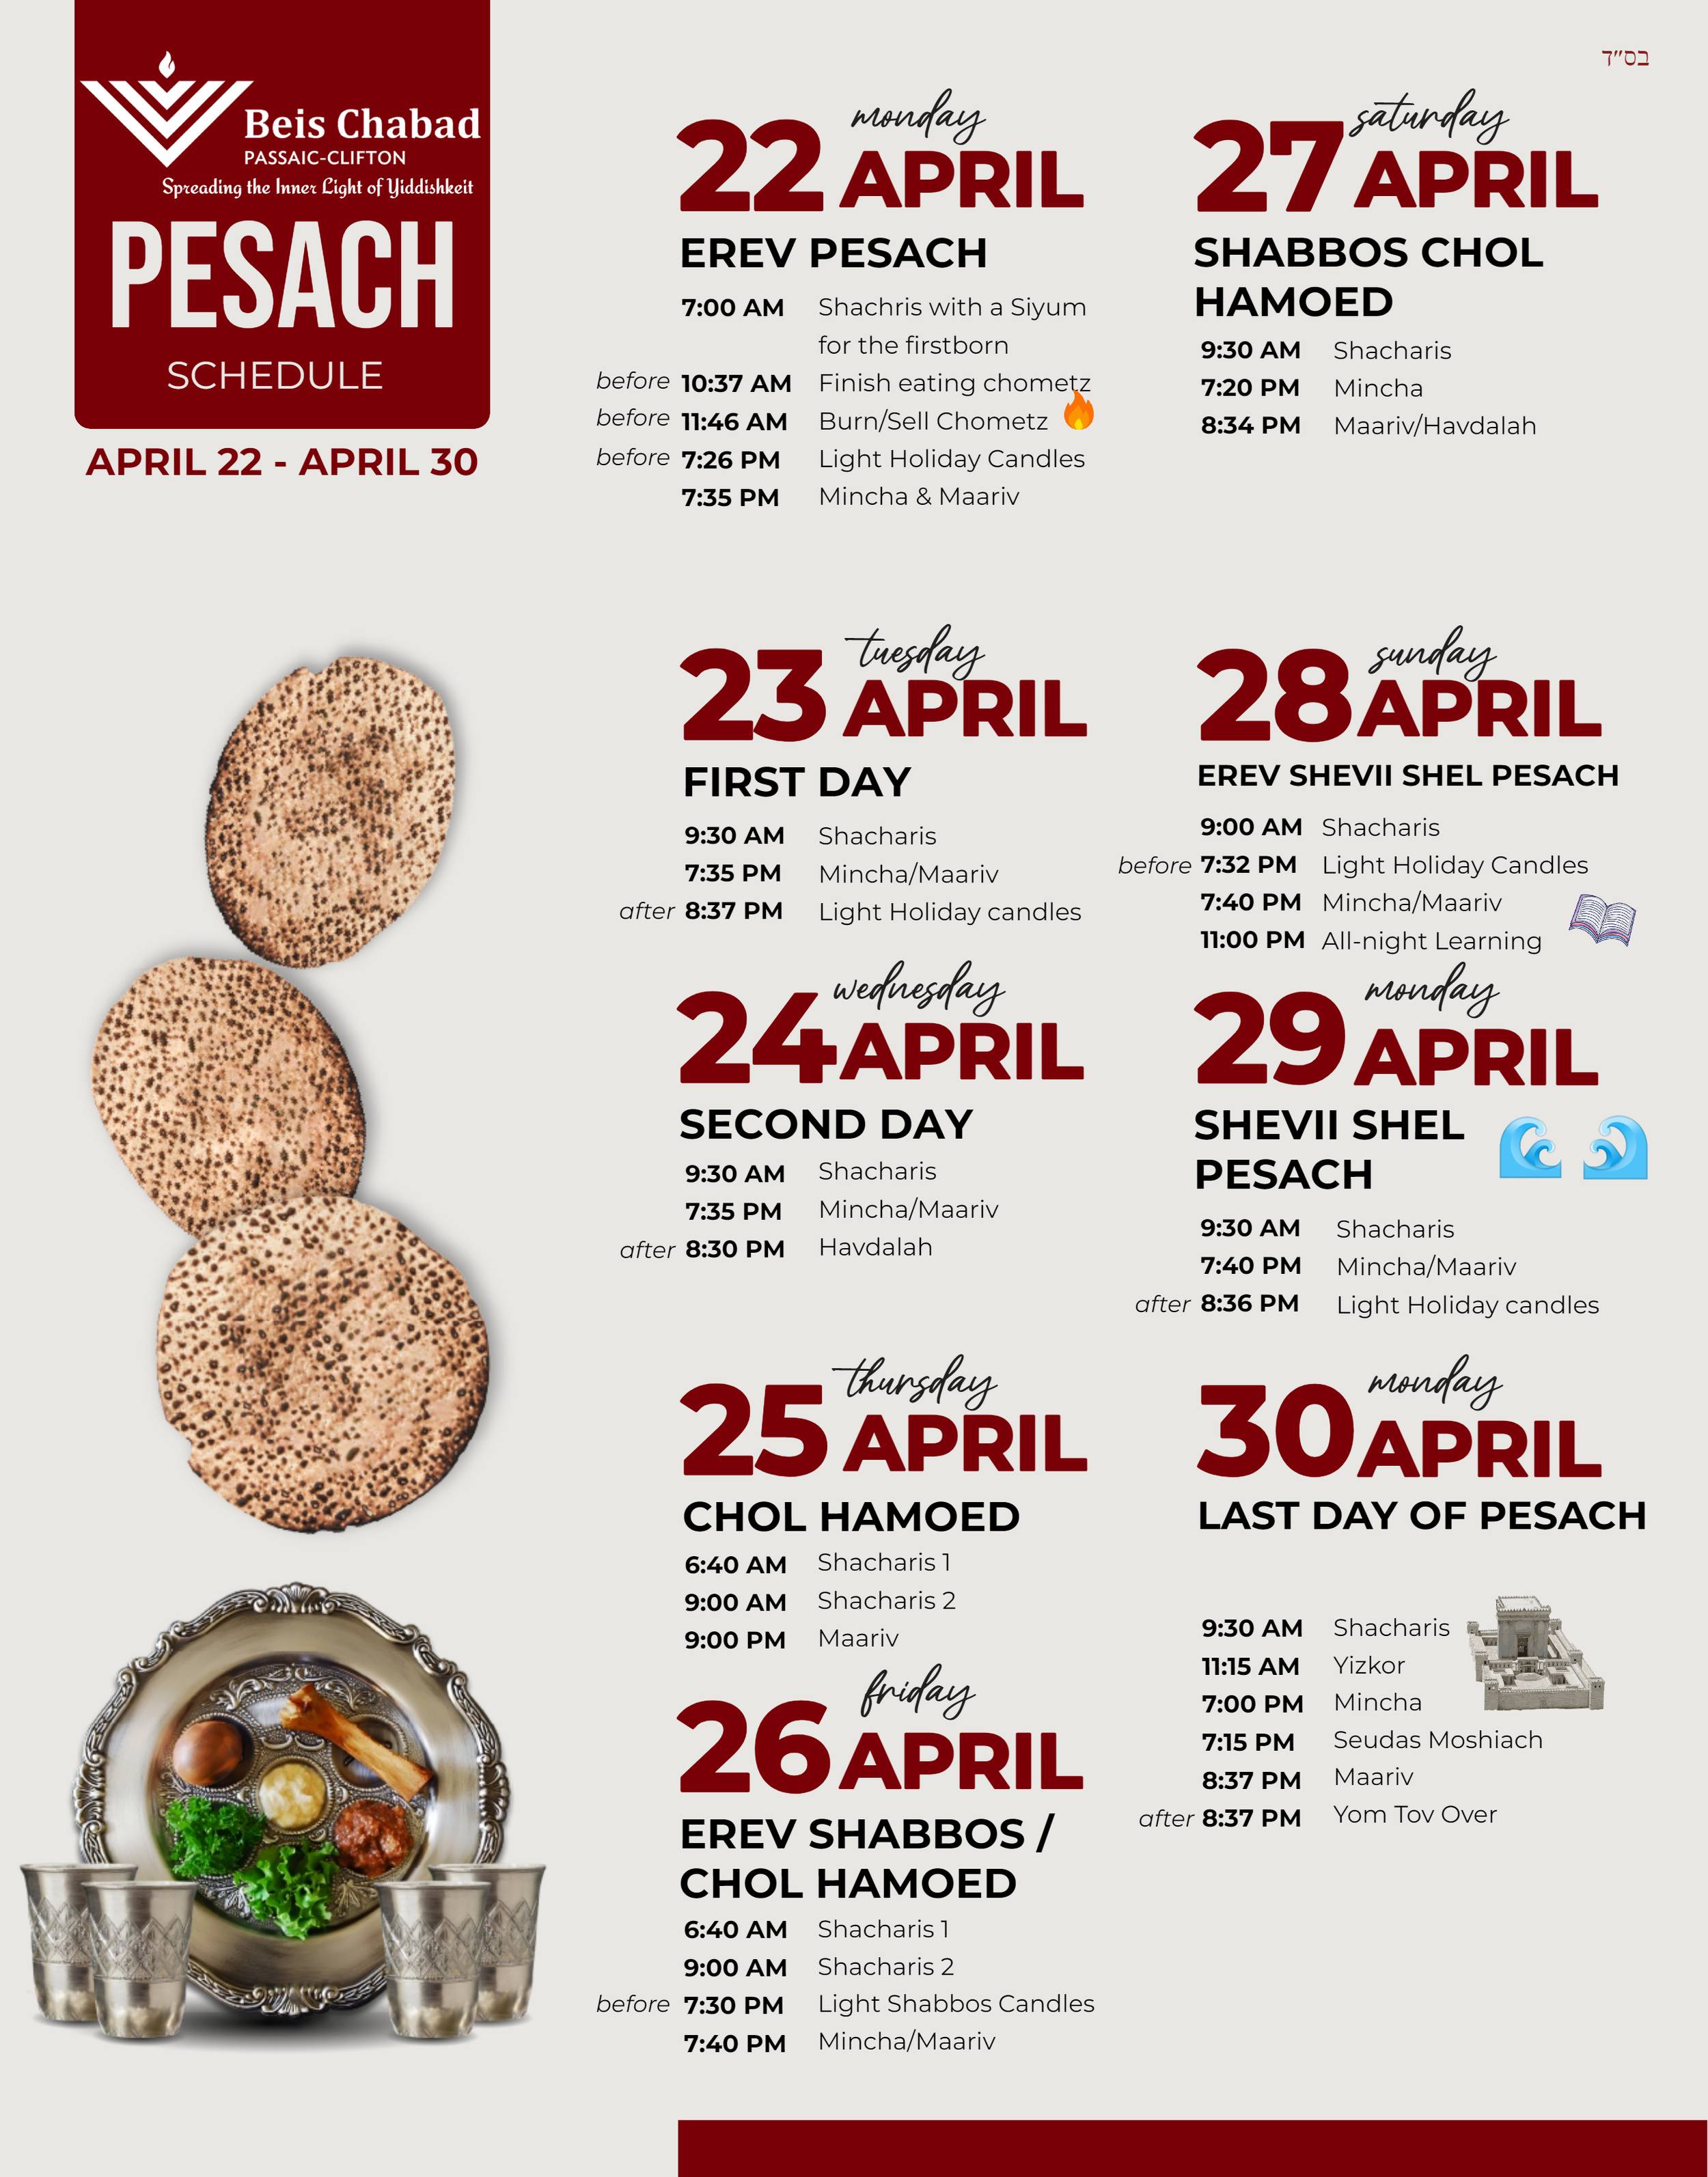 Pesach schedule